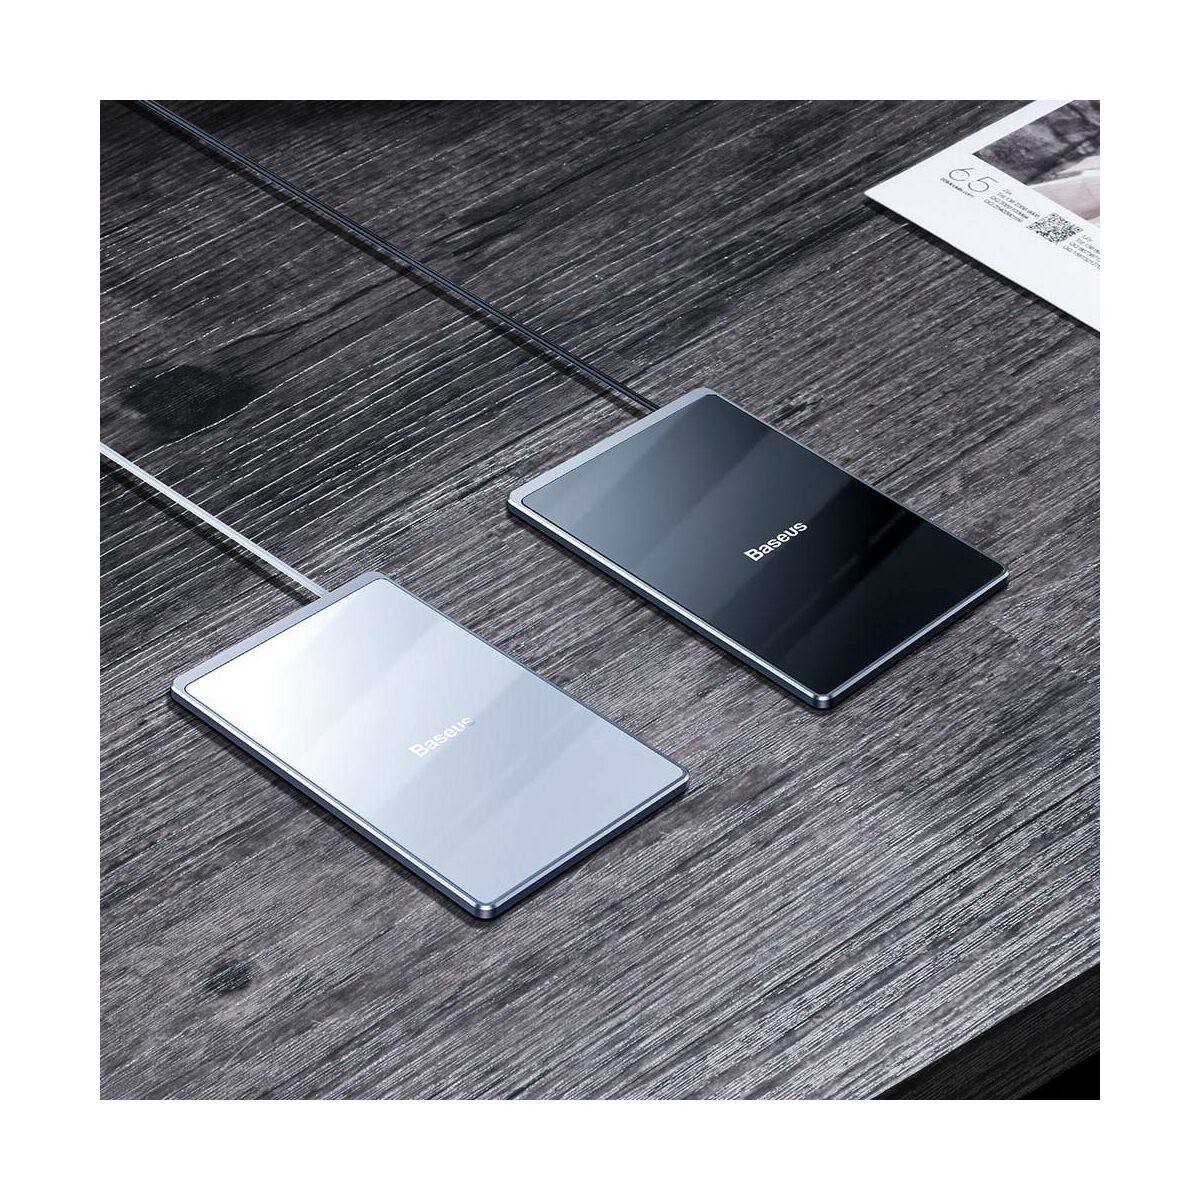 Kép 13/13 - Baseus vezeték nélküli töltő, Ultra-thin Card 15W (beépített 1m USB kábellel), ezüst/fehér (WX01B-S2)